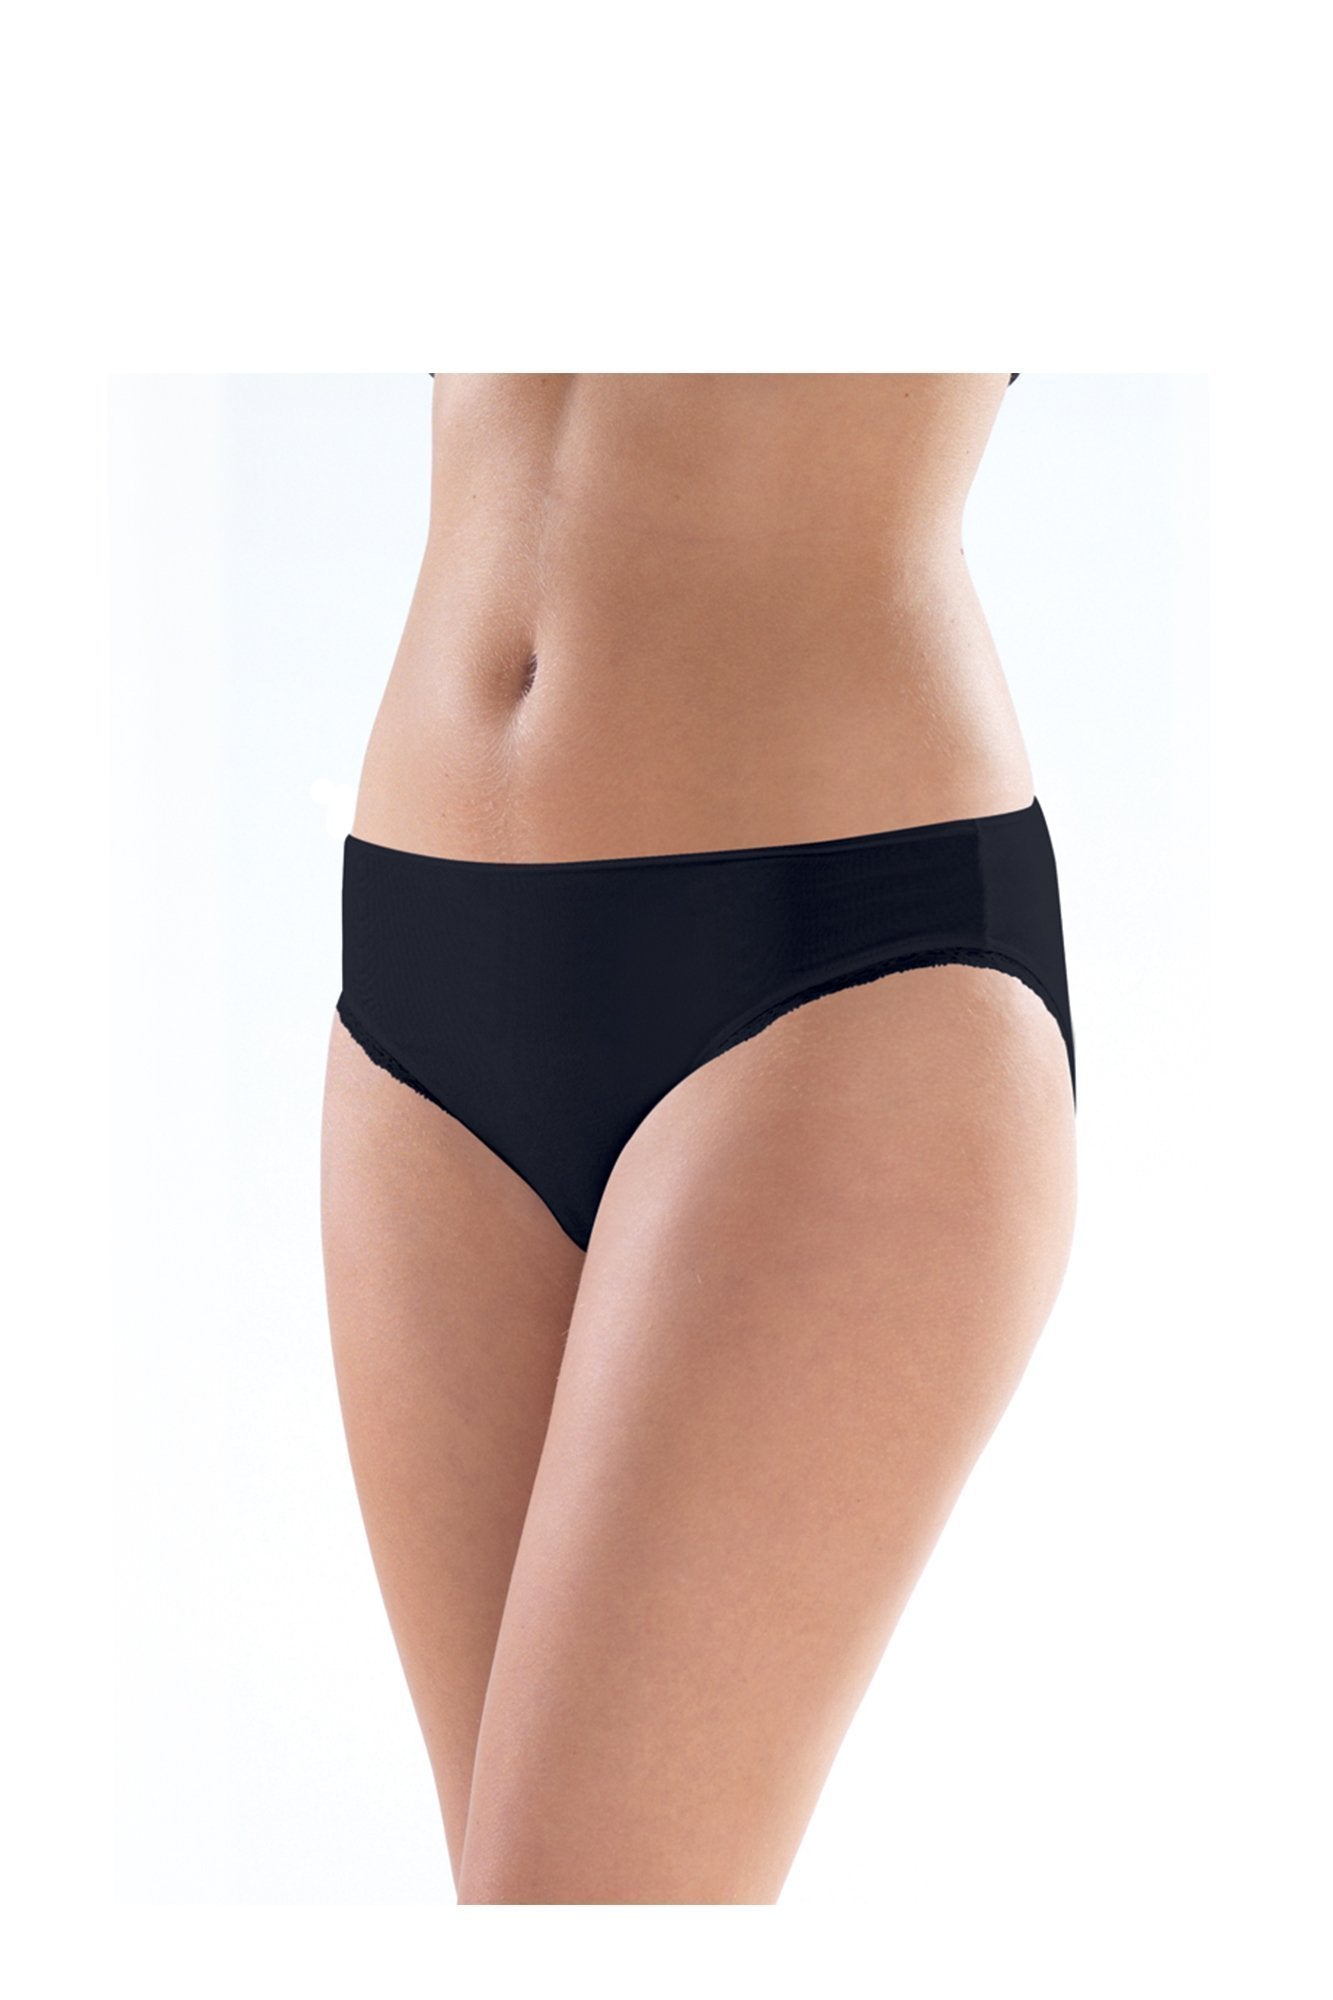 Ladies' Slip-1362 underwear blackspade Black L 46% Modal 46% Cotton 8% Elastane